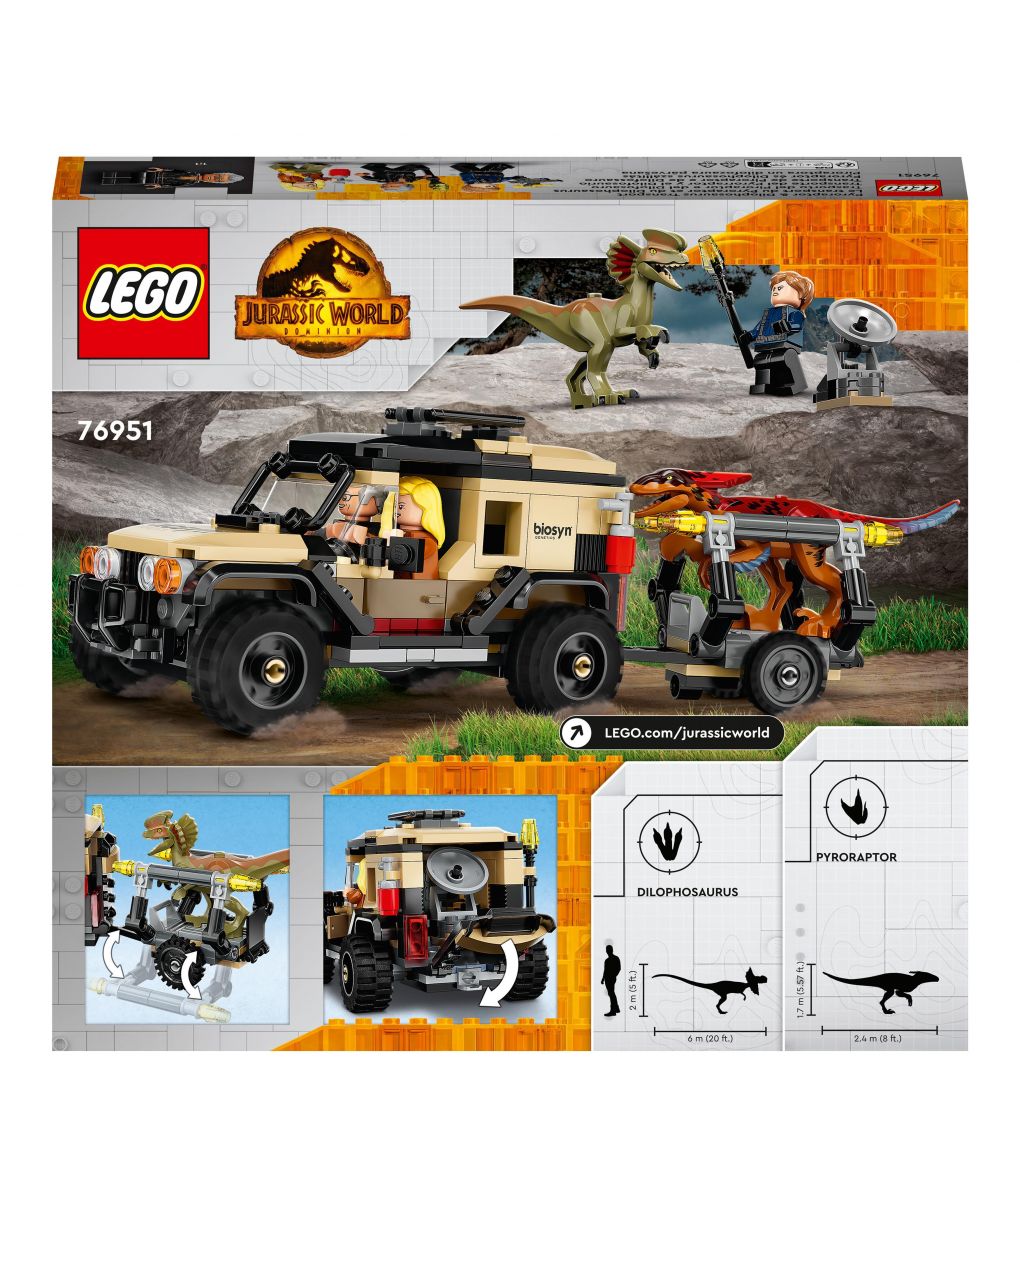 Transporte do piroraptor e dilophosaurus 76951 - mundo jurássico de lego - Lego Jurassic Park/W